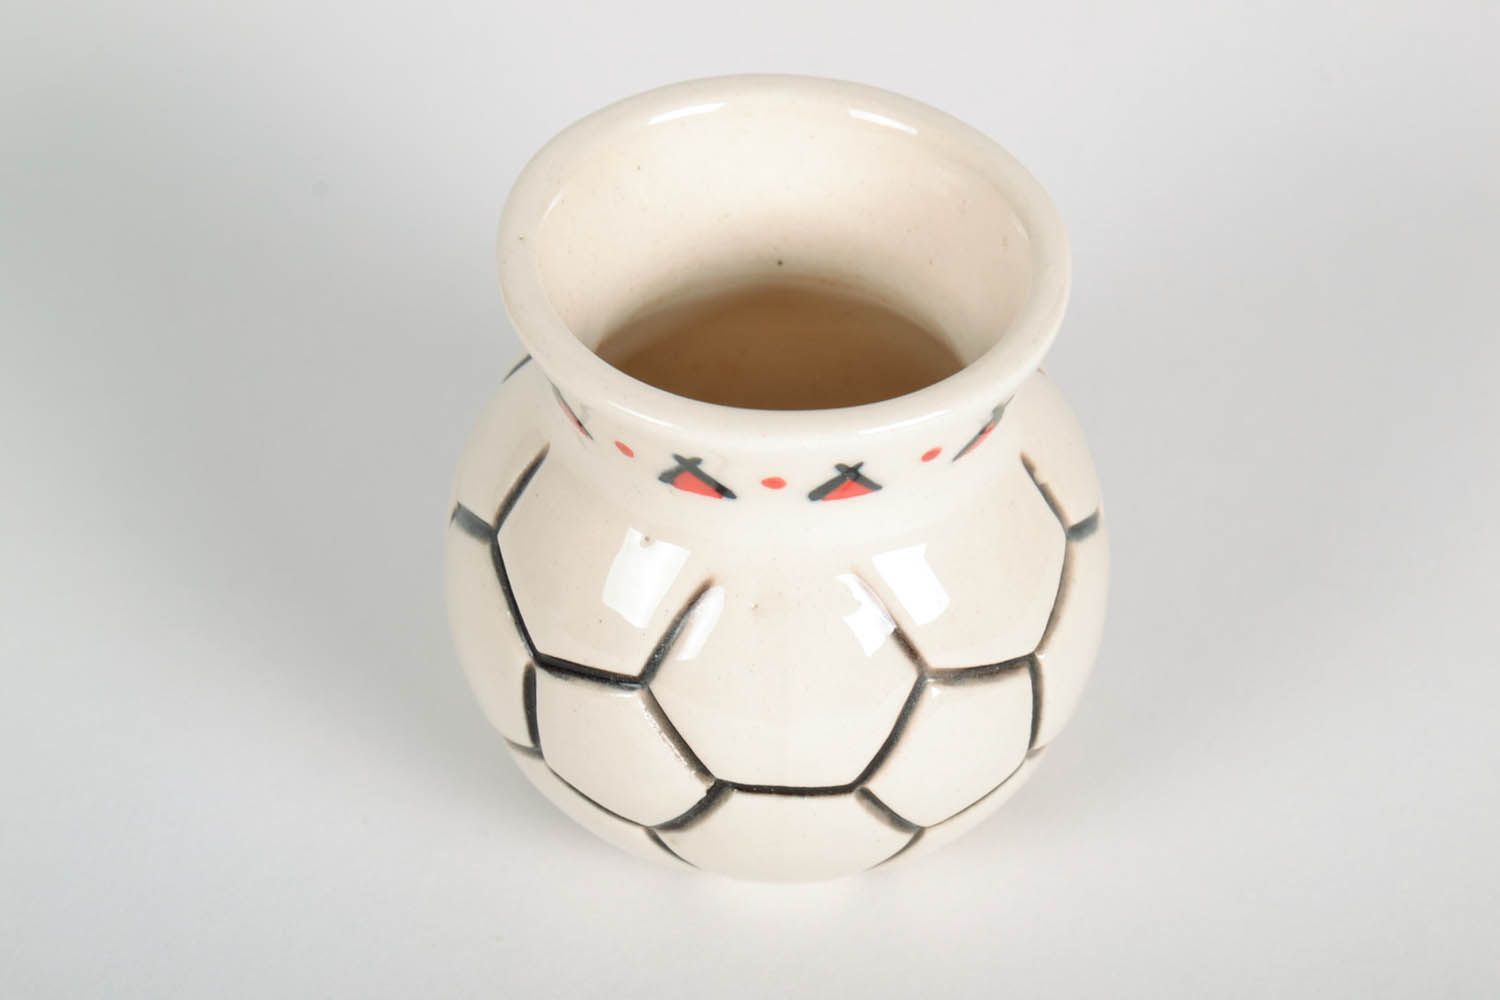 3-inch ceramic vase in the shape of soccer ball 0,26 lb photo 5